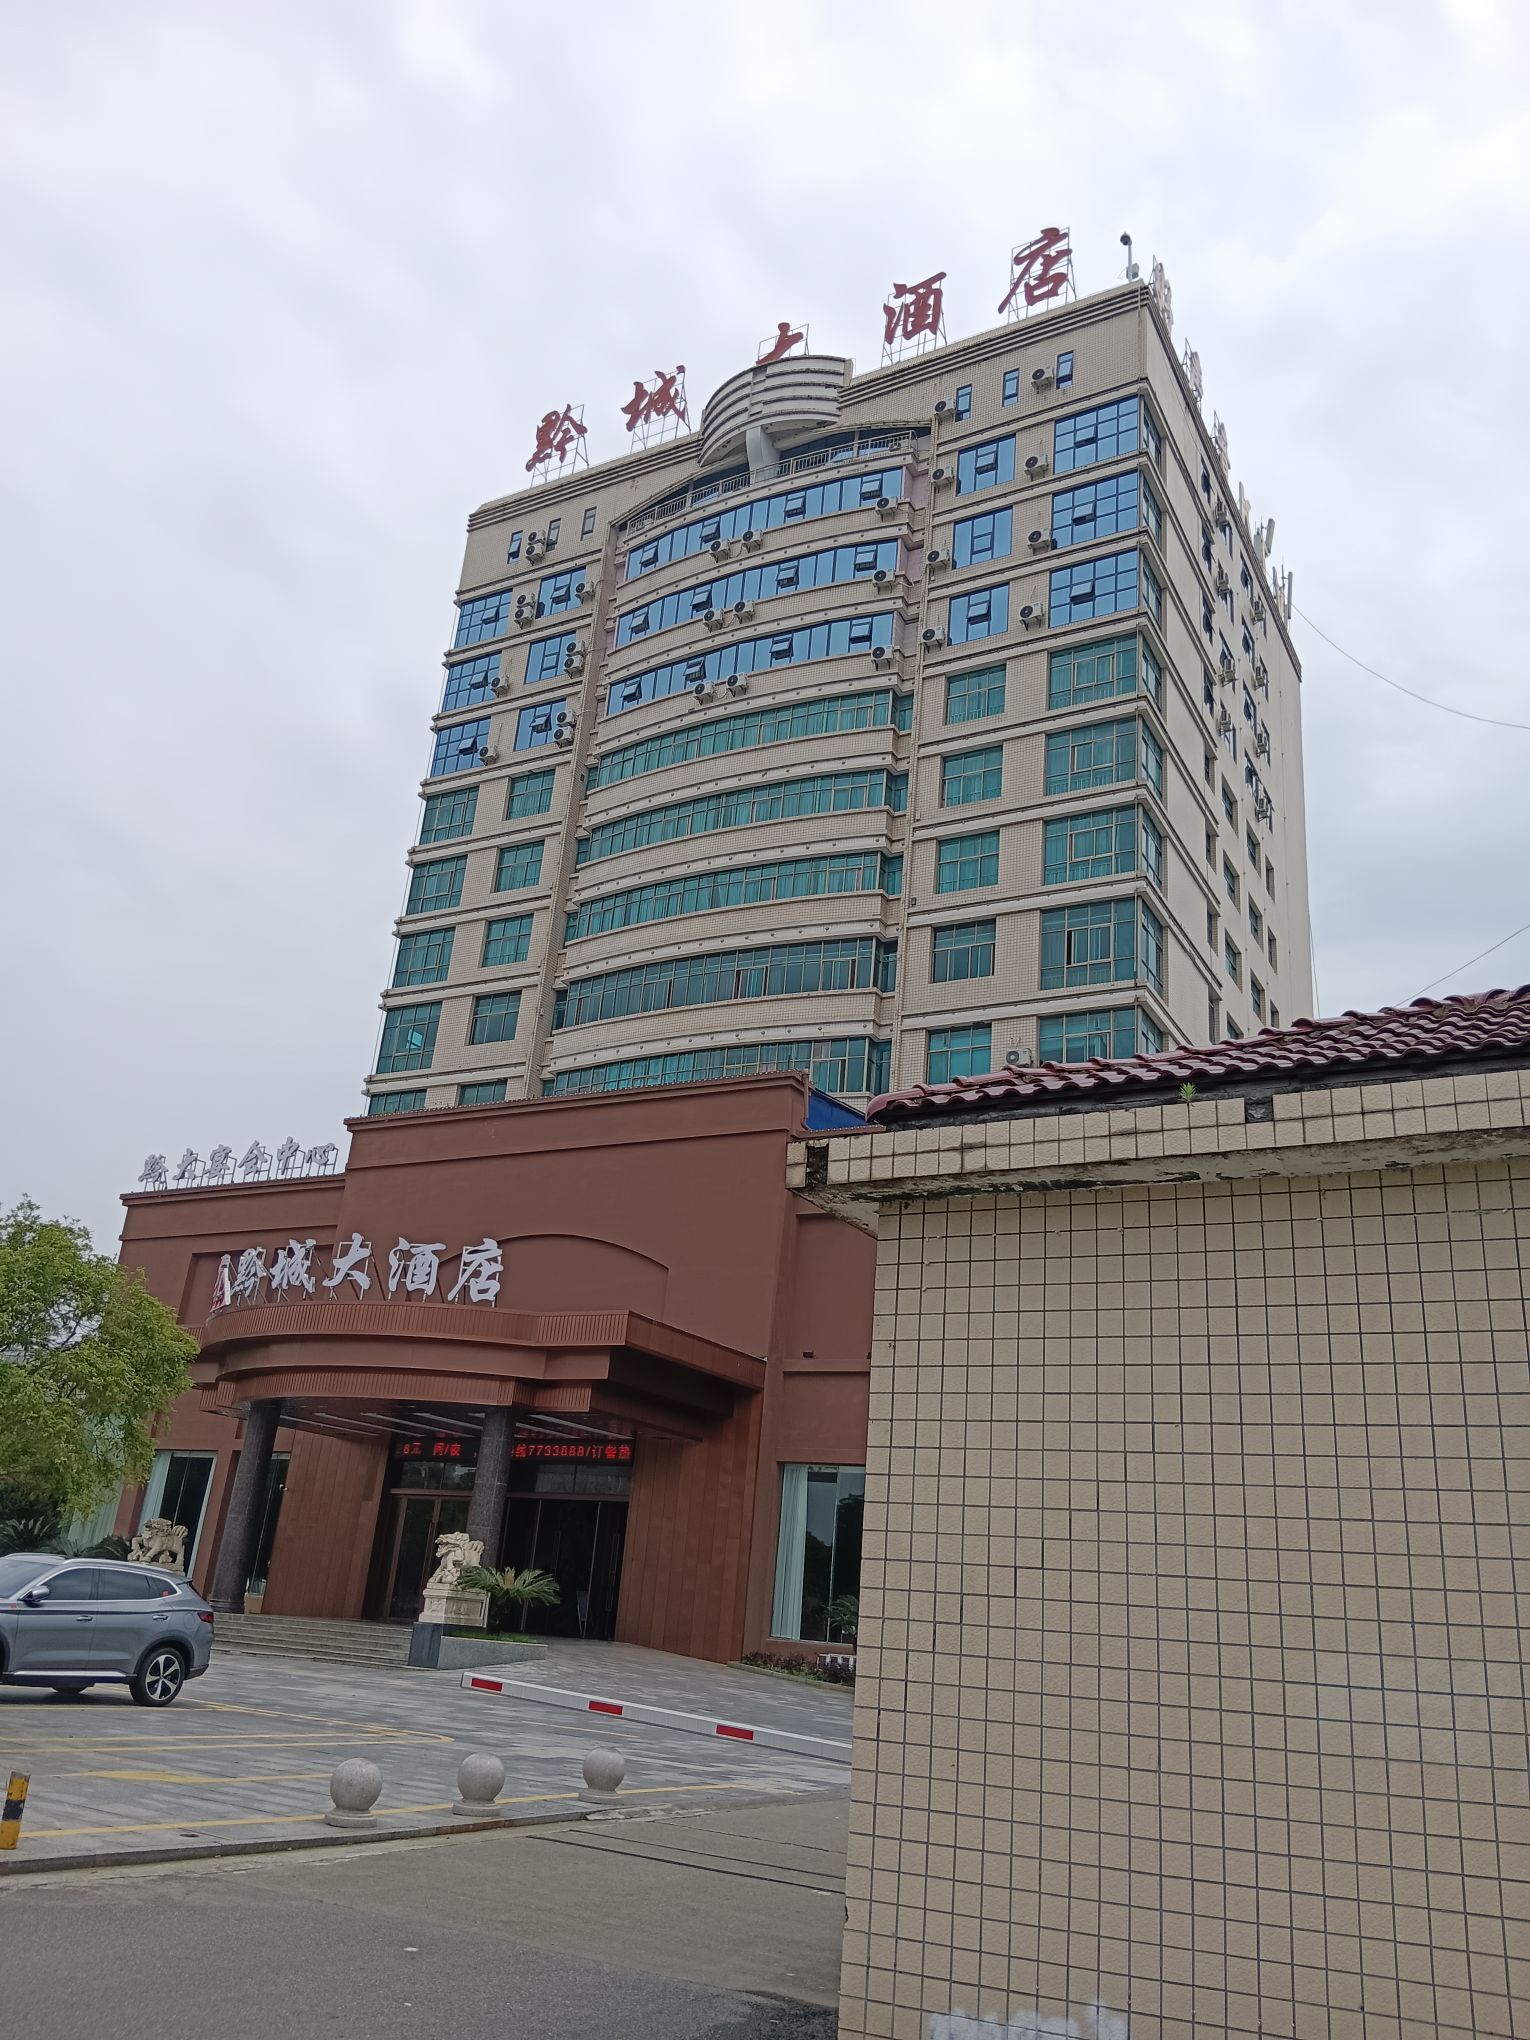 第二次来黔城大酒店了，该酒店位置正好位于洪江市市政府正对面，中间有个小公园。酒店算是当地数一数二的品